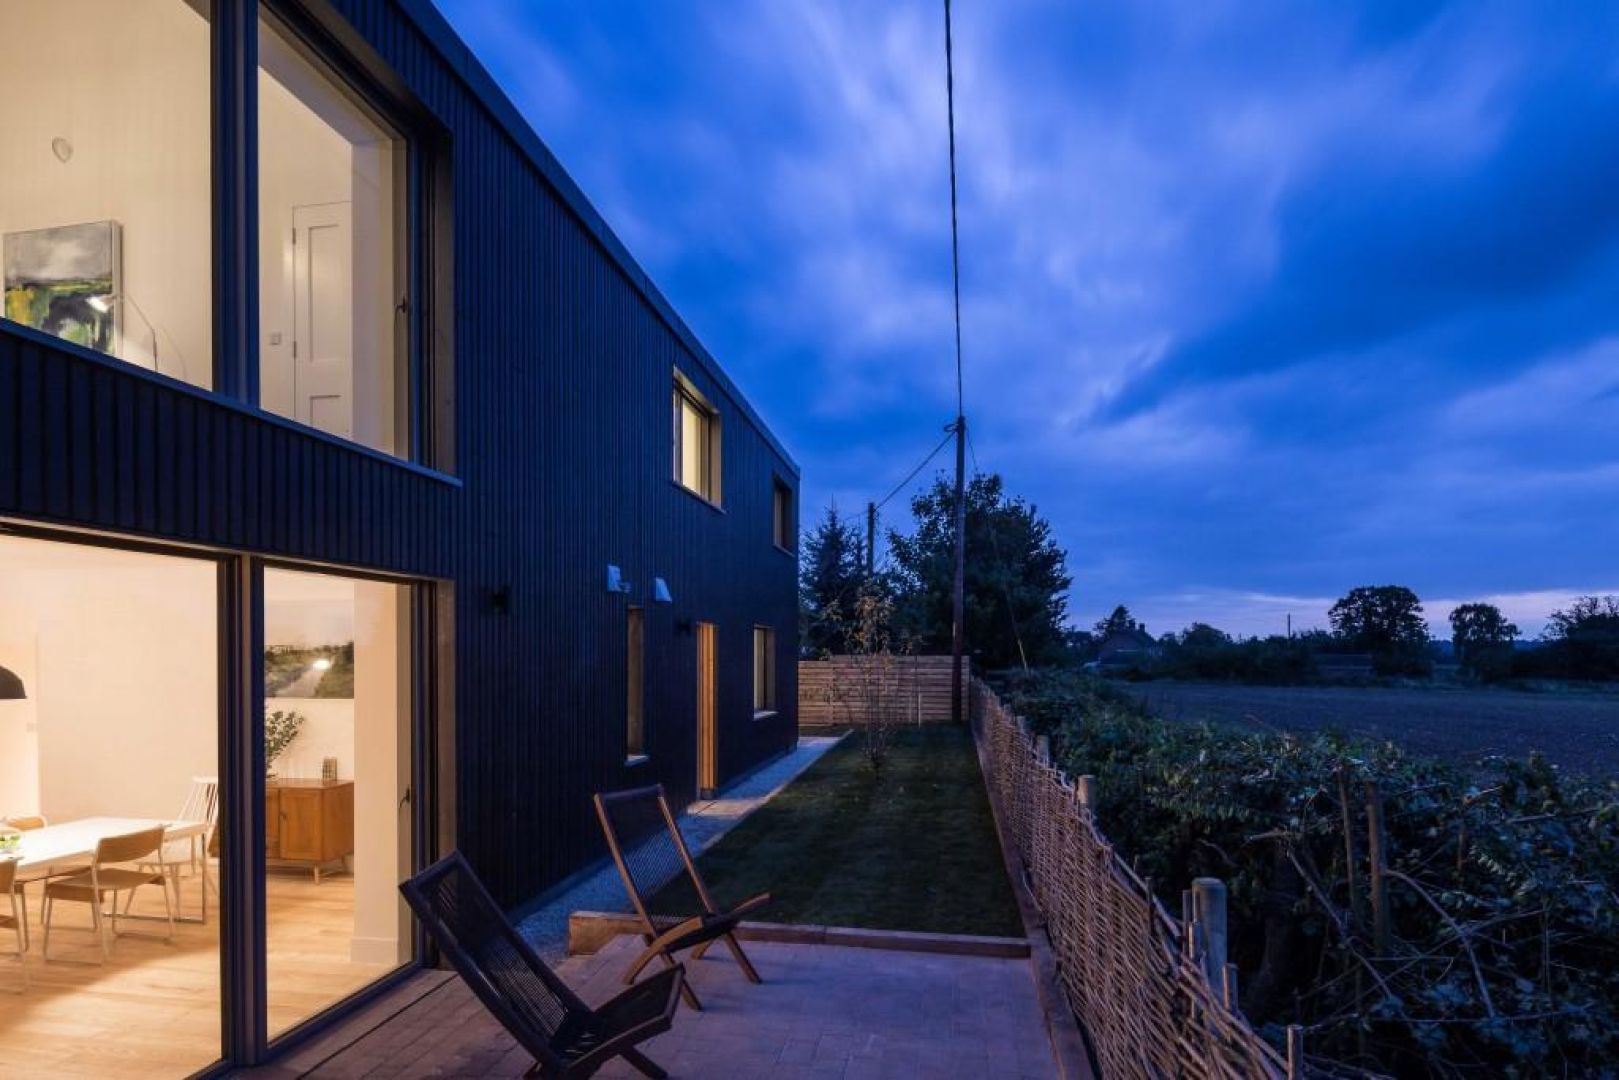 Proste ogrodzenie i niewielki taras umożliwiają miłe spędzanie czasu w ciepłe wieczory. Fot. Gresford Architects